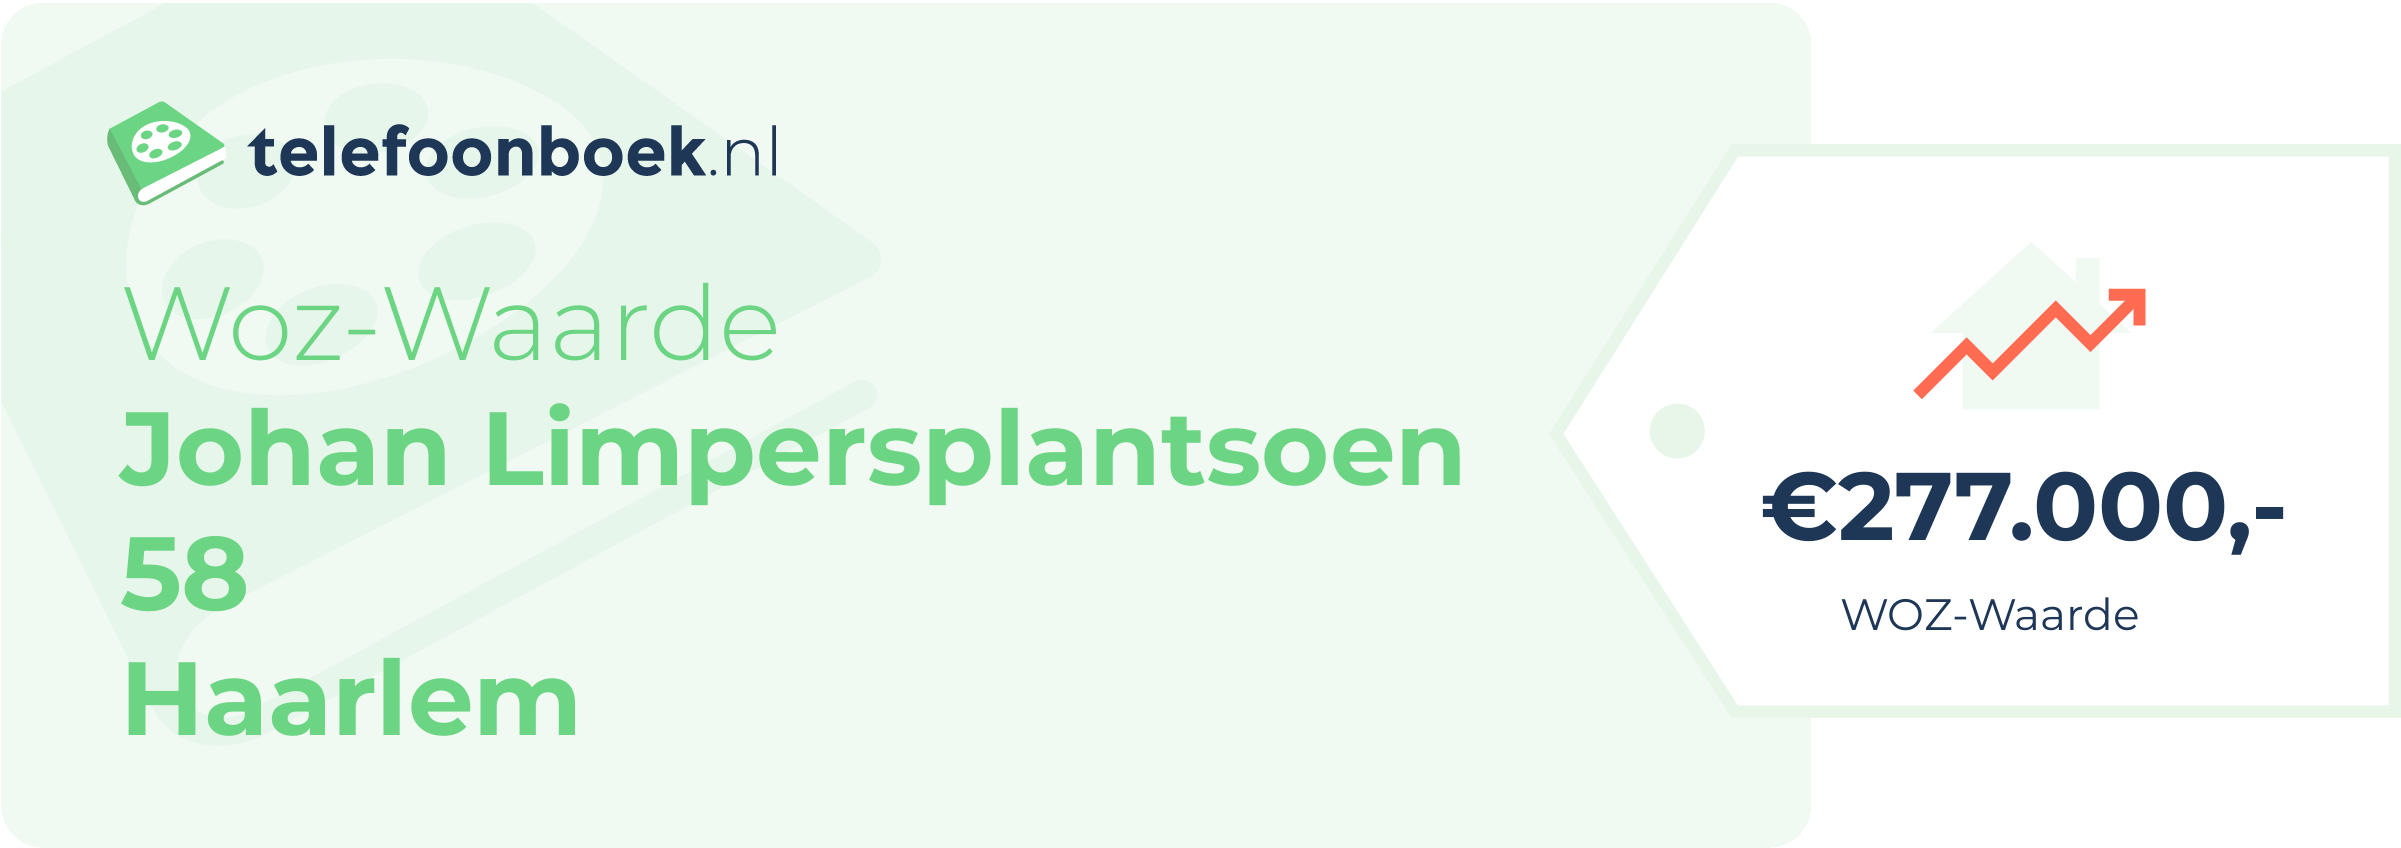 WOZ-waarde Johan Limpersplantsoen 58 Haarlem